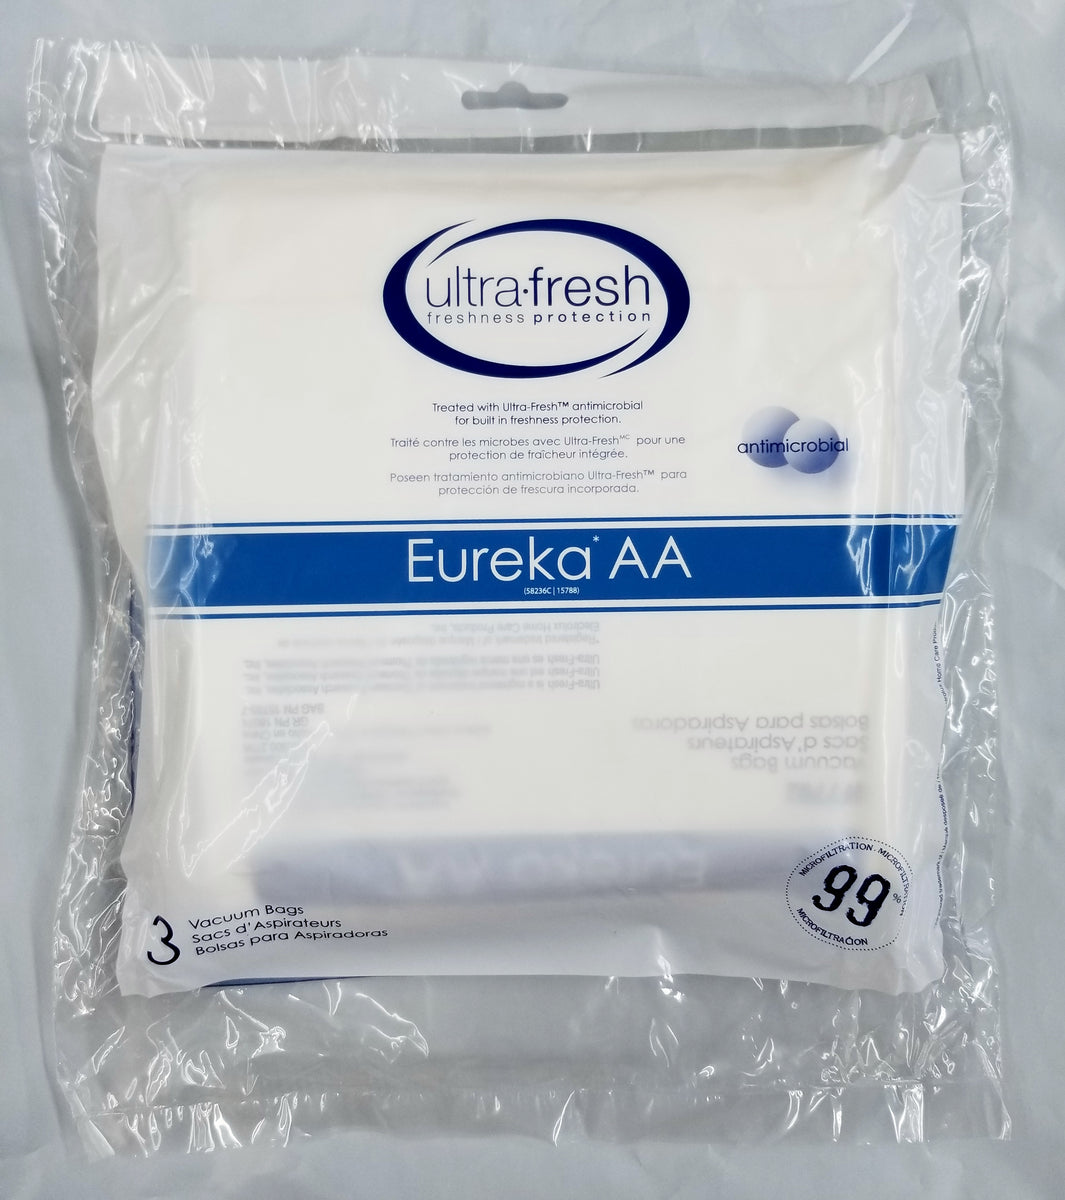 Eureka Pack de 10 bolsas para aspiradora.